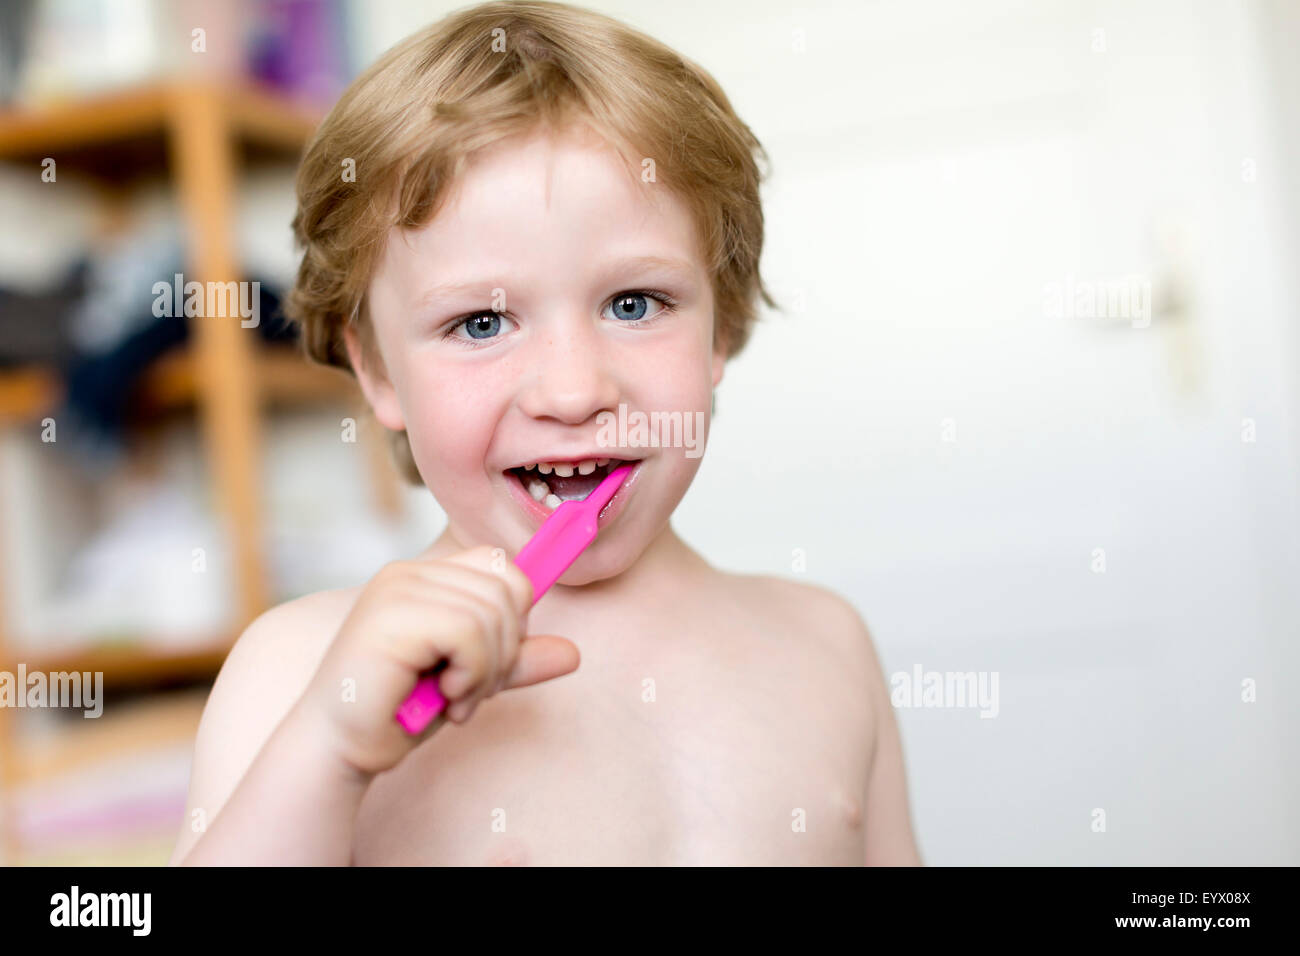 Jeune garçon, 4 ans, le brossage des dents Banque D'Images